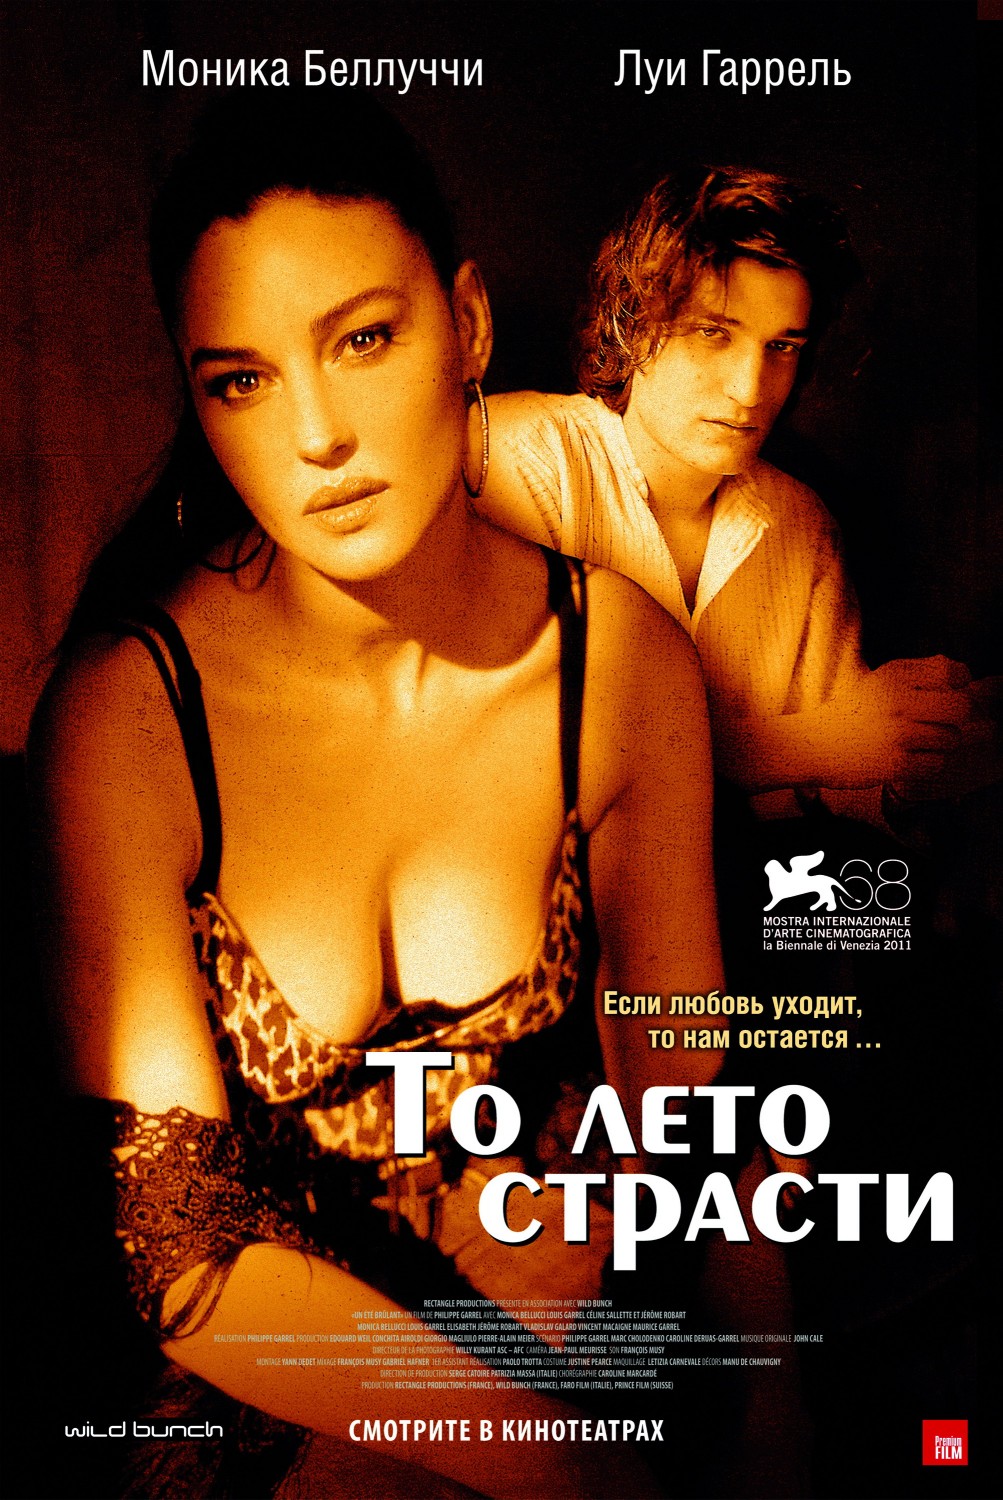 Extra Large Movie Poster Image for Un été brûlant (#2 of 2)